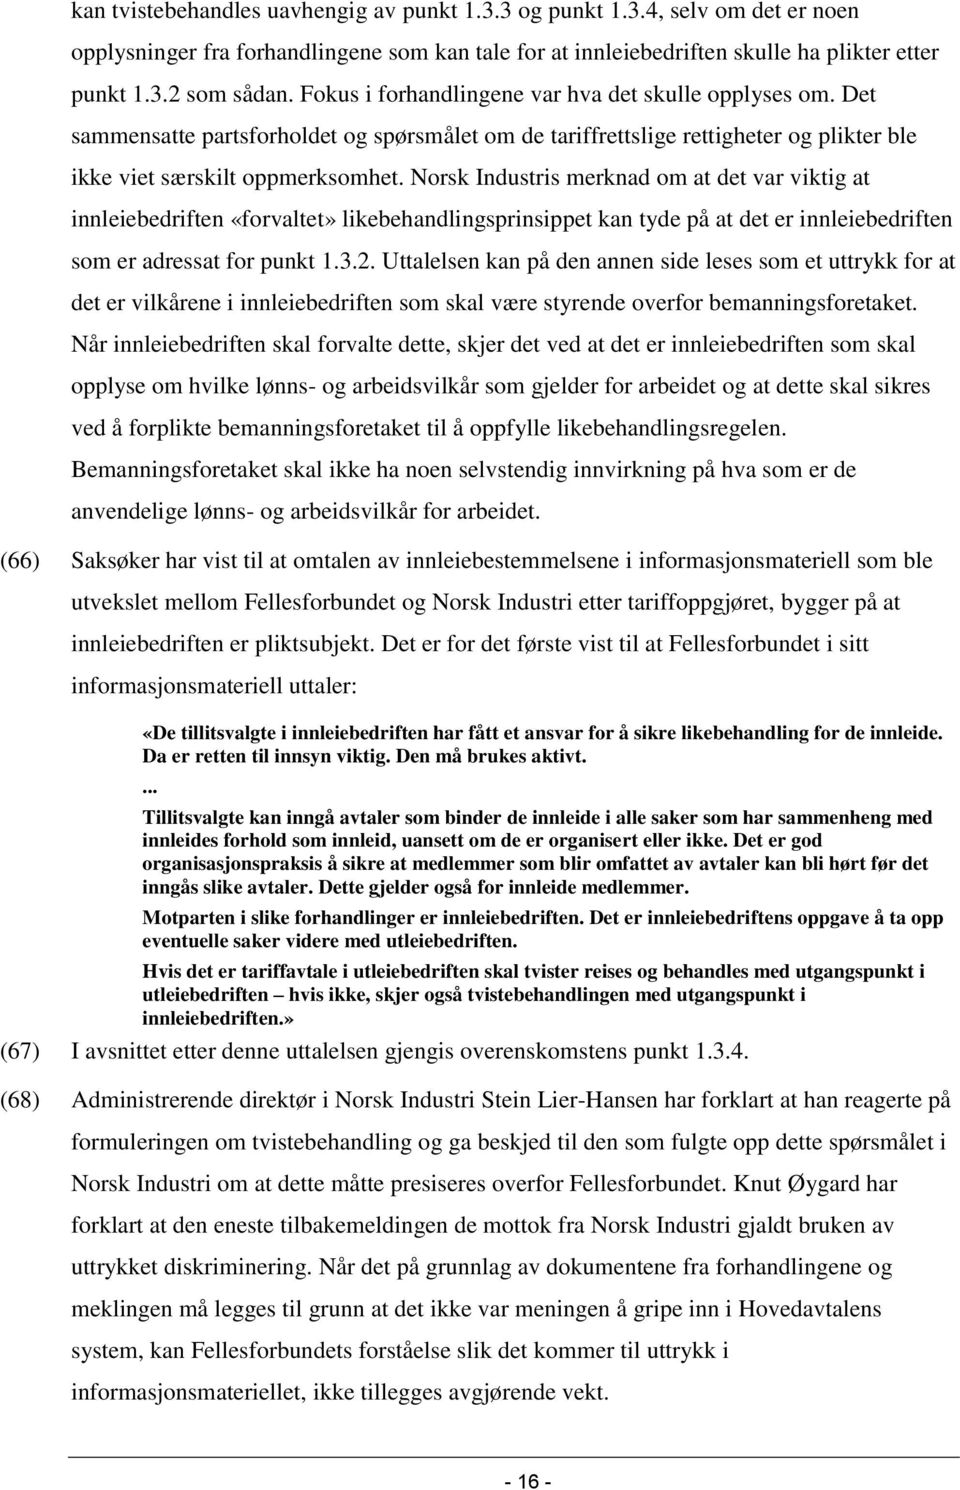 Norsk Industris merknad om at det var viktig at innleiebedriften «forvaltet» likebehandlingsprinsippet kan tyde på at det er innleiebedriften som er adressat for punkt 1.3.2.